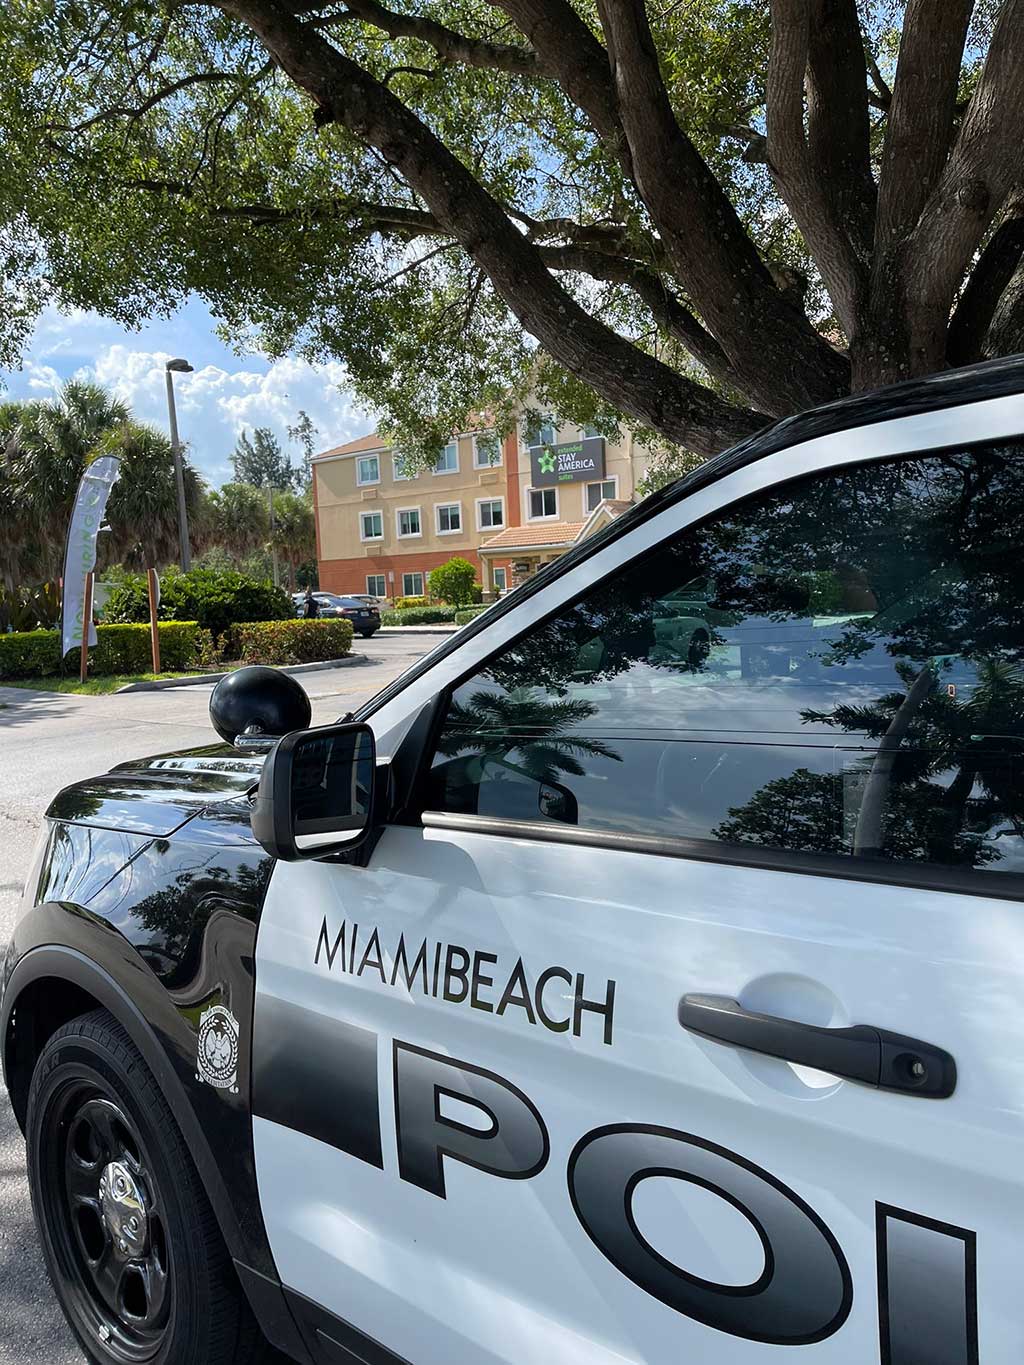 Miami Beach Police Arrest Suspect at Miami Springs Hotel (Photo courtesy Miami Beach Police)